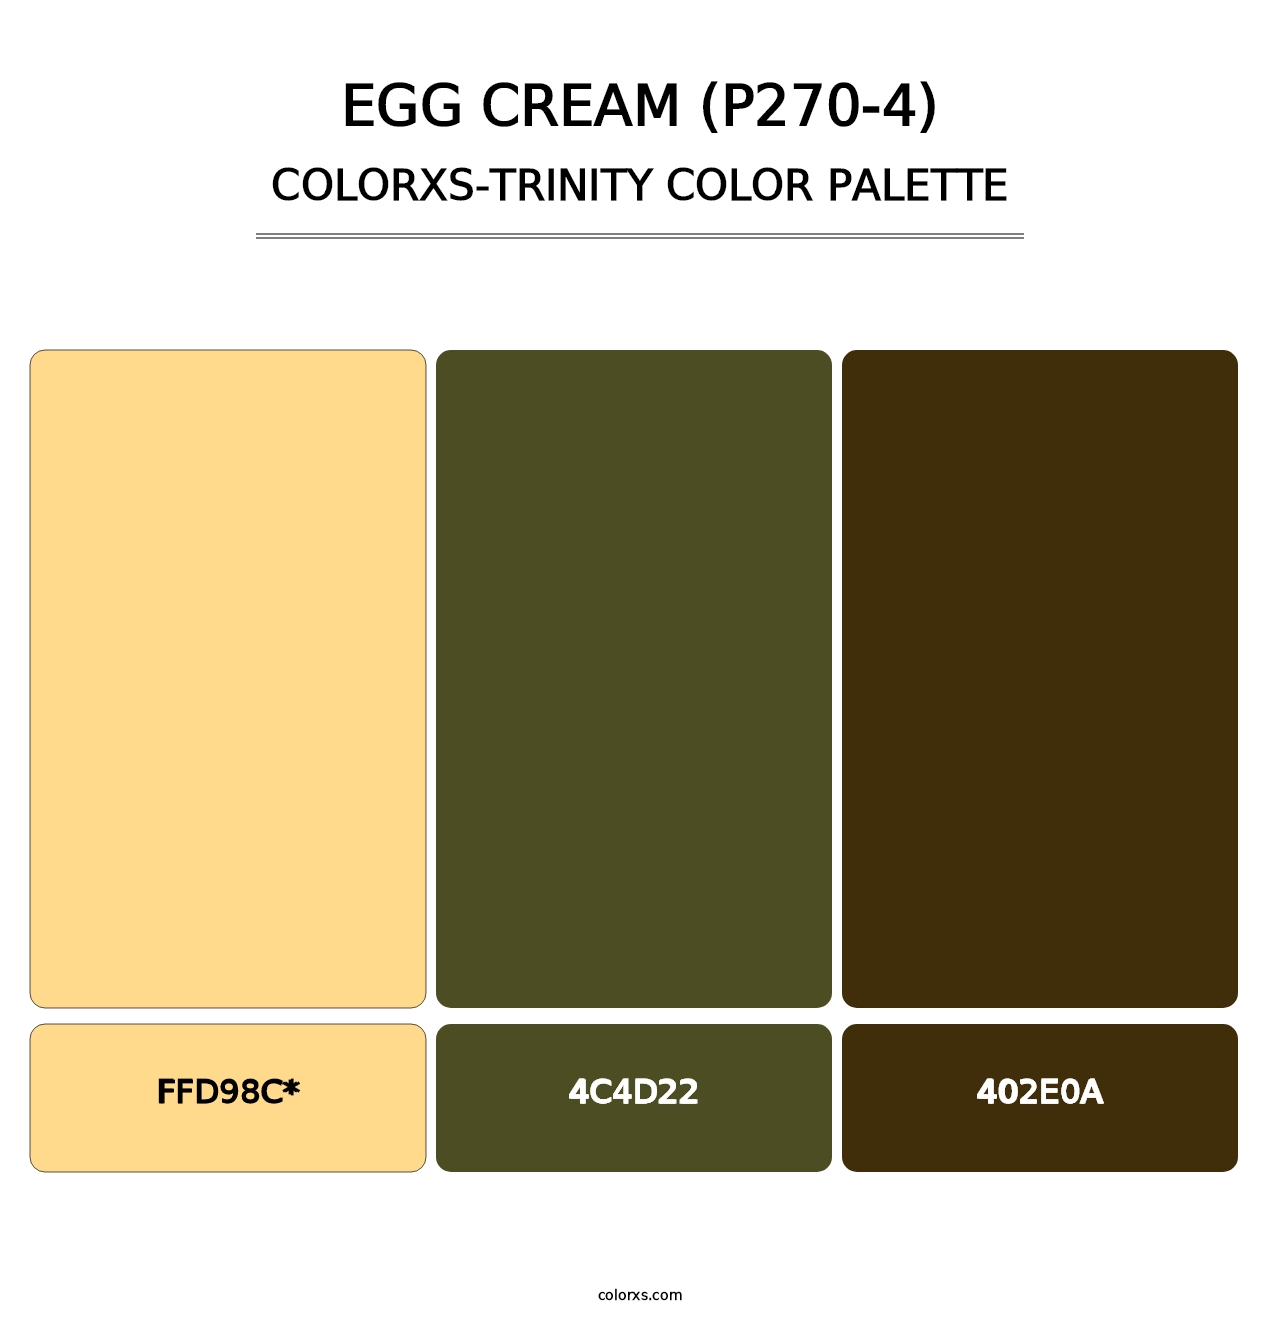 Egg Cream (P270-4) - Colorxs Trinity Palette